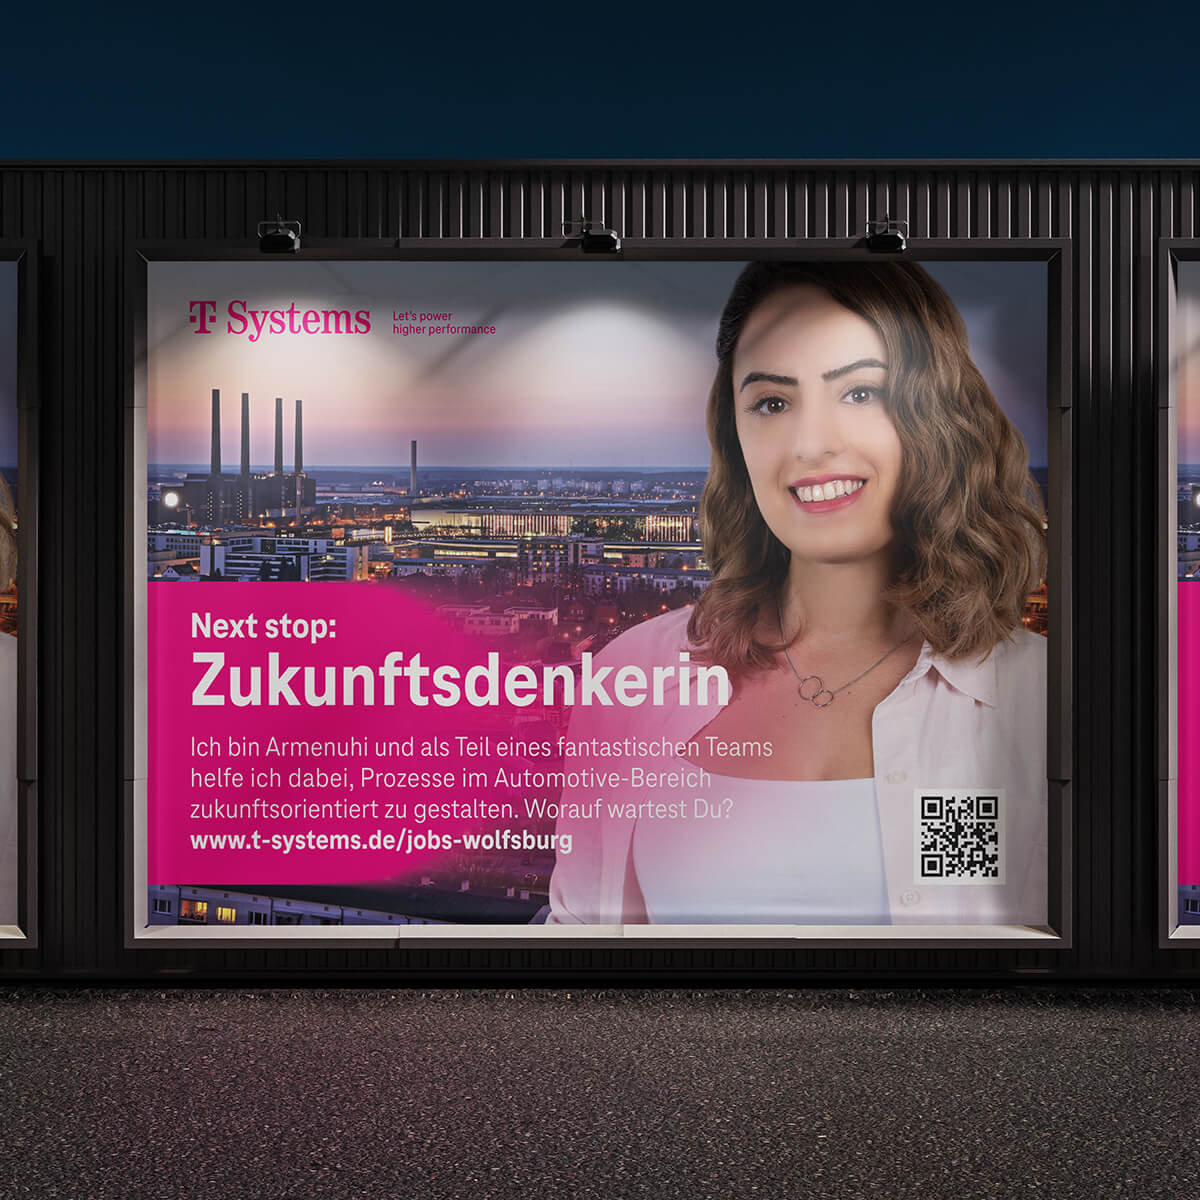 Hier sieht man eine Bushaltestelle Werbung für die Wolfsburg Kampagne der T-Systems, bei der tikitay die Planung und Umsetzung übernommen hat.